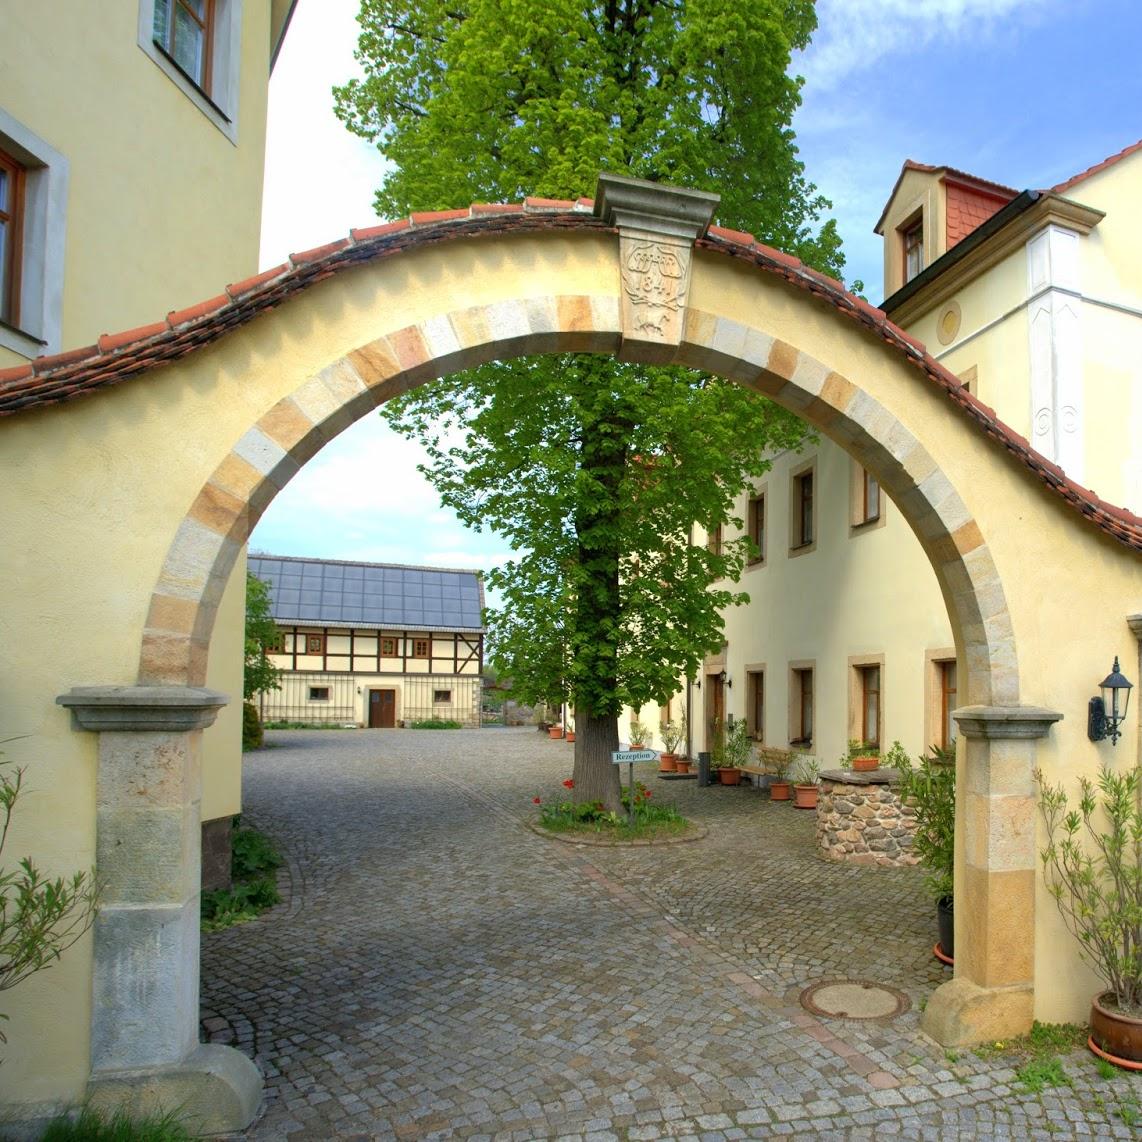 Restaurant "Landhotel Gut Wildberg" in Klipphausen